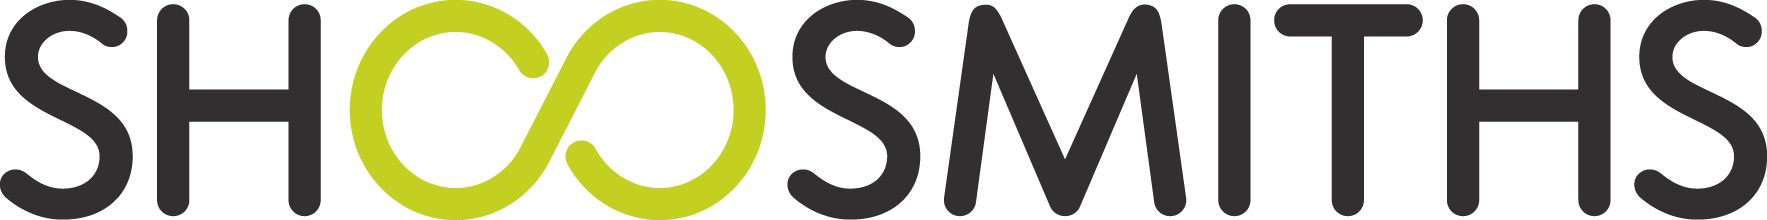 logo for Shoosmiths LLP